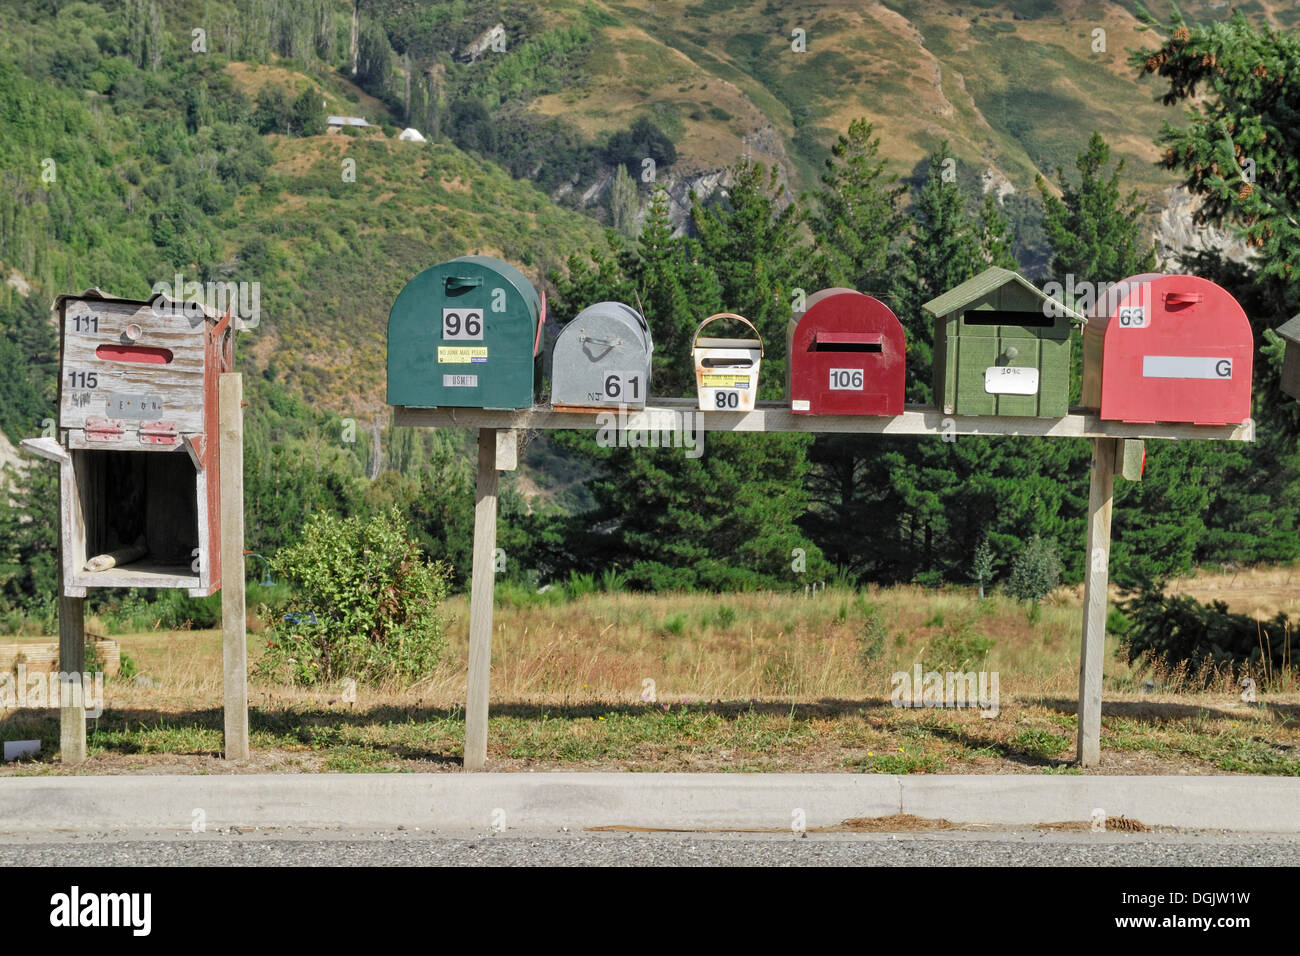 Les boîtes aux lettres individuelles bordant la route d'accès à une nouvelle colonie, Arthurs Point, île du Sud, Nouvelle-Zélande Banque D'Images